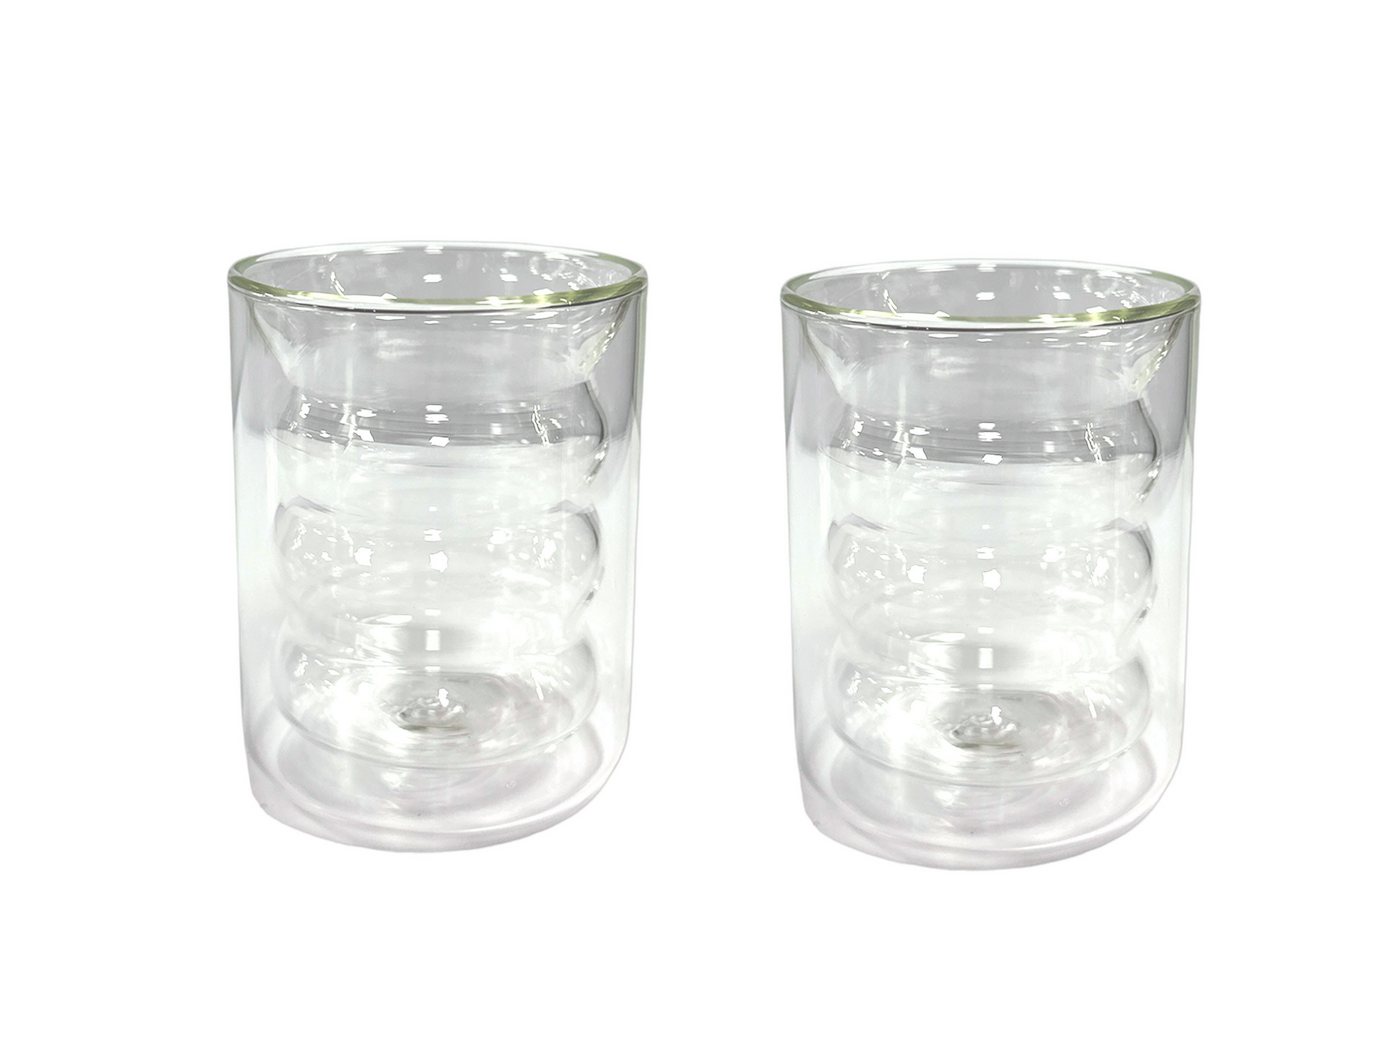 Mulex Gläser-Set Mulex-welle, Glas, wellenförmige 2-teiligen Tee Kaffee Wasserbecher von Mulex